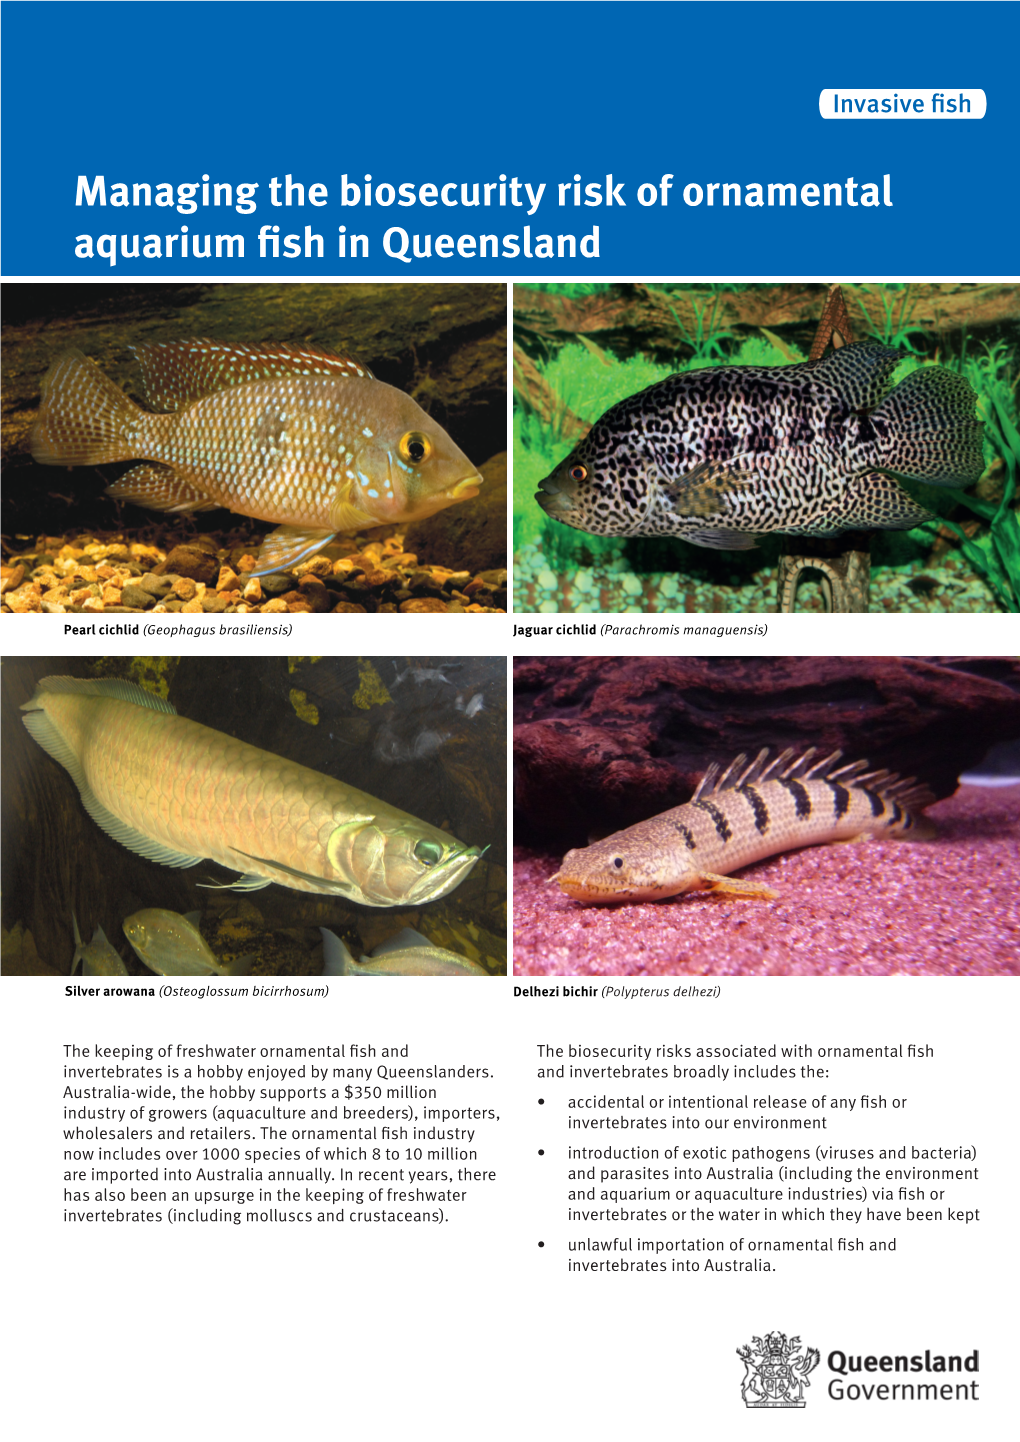 Managing the Biosecurity Risk of Ornamental Aquarium Fish in Queensland